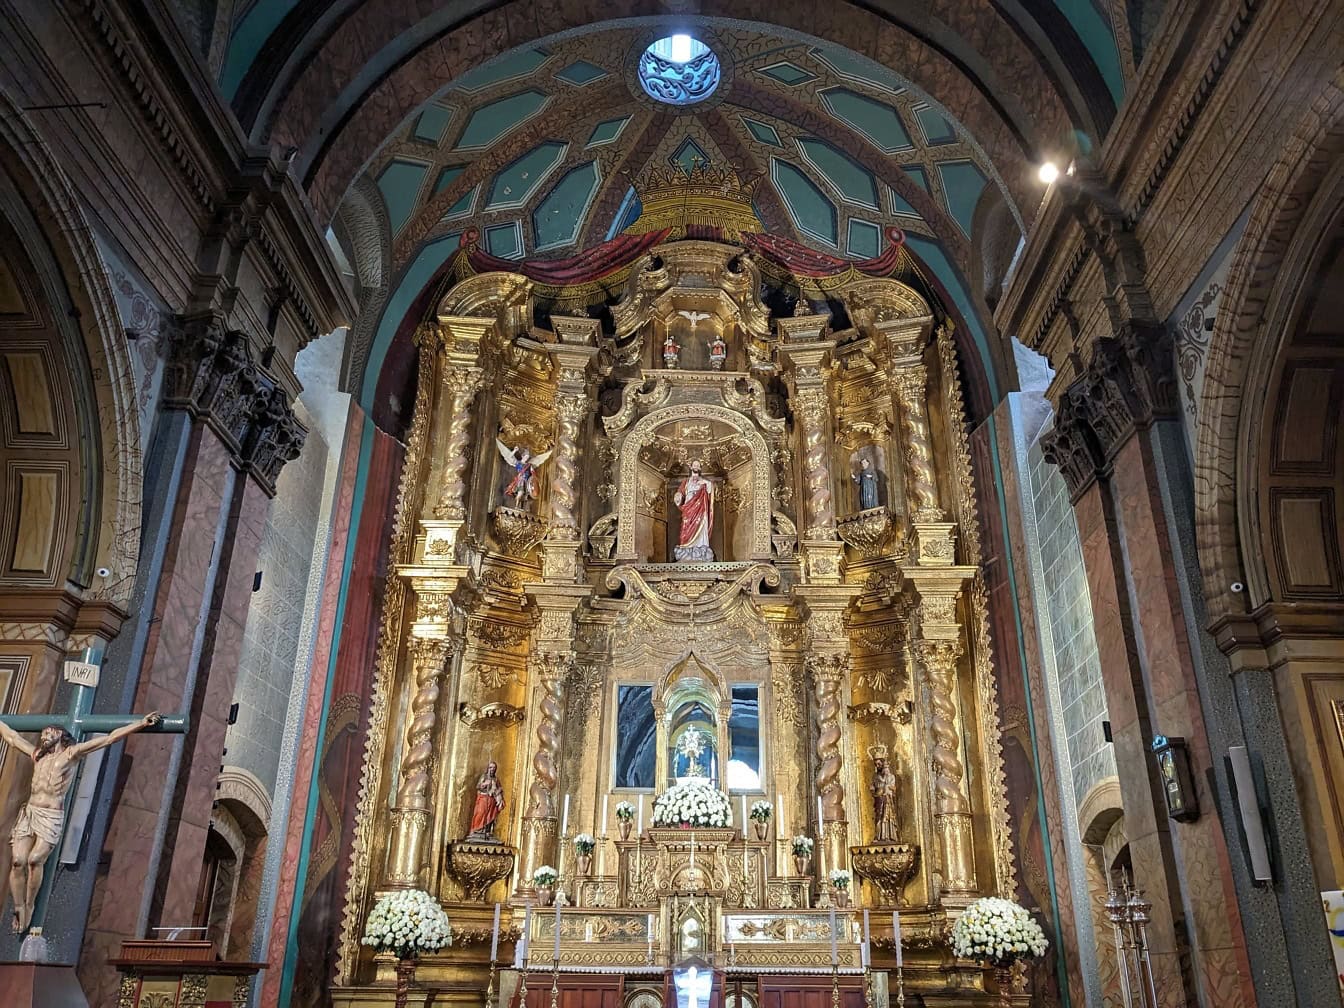 Altar adornado en oro con estatuas en una iglesia católica renacentista del Tabernáculo en Quito, capital de Ecuador